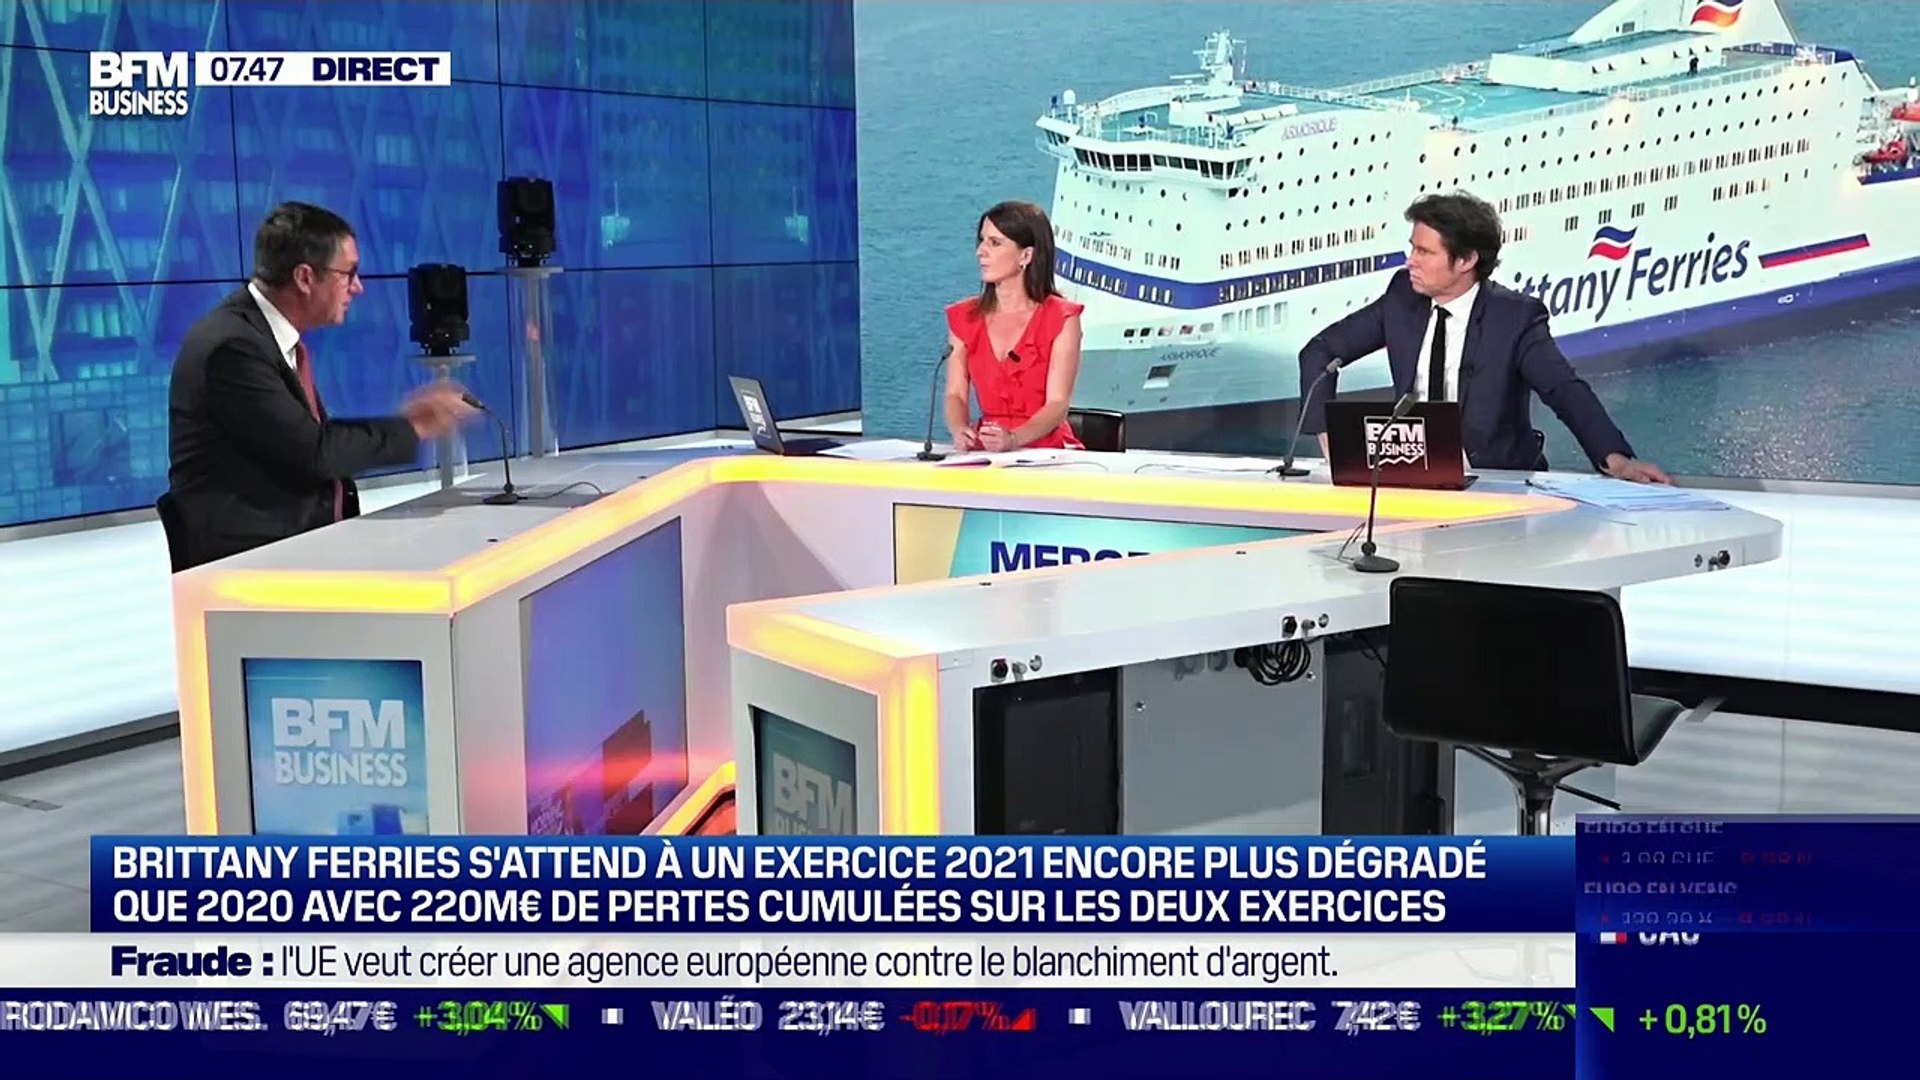 Jean-Marc Roué (Brittany Ferries): Brittany Ferries s'attend à un exercice  2021 encore plus dégradé que 2020 - 21/07 - Vidéo Dailymotion